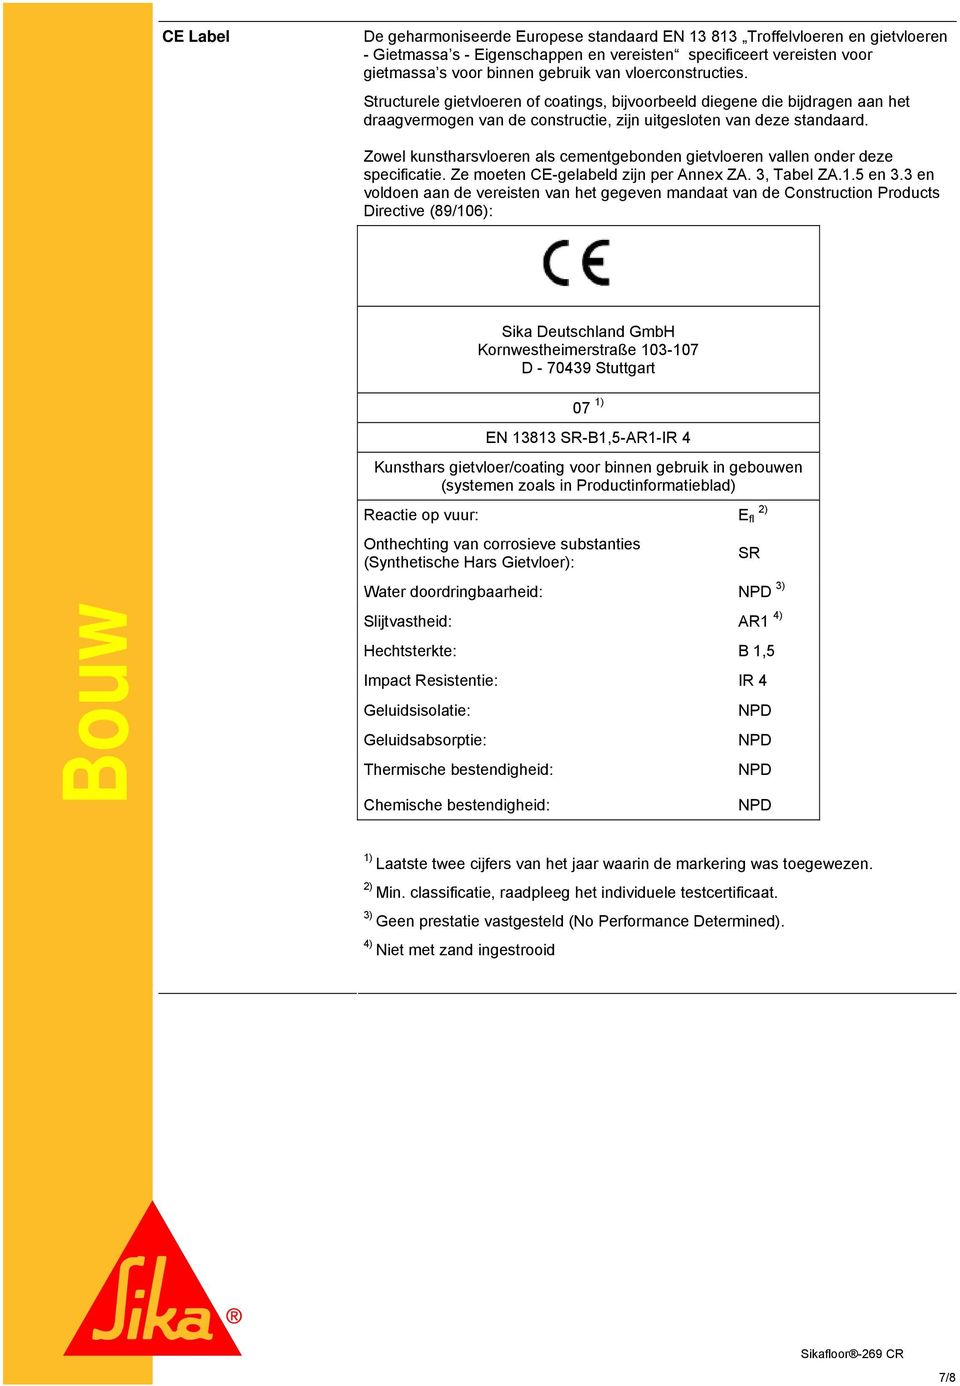 Zowel kunstharsvloeren als cementgebonden gietvloeren vallen onder deze specificatie. Ze moeten CE-gelabeld zijn per Annex ZA. 3, Tabel ZA.1.5 en 3.